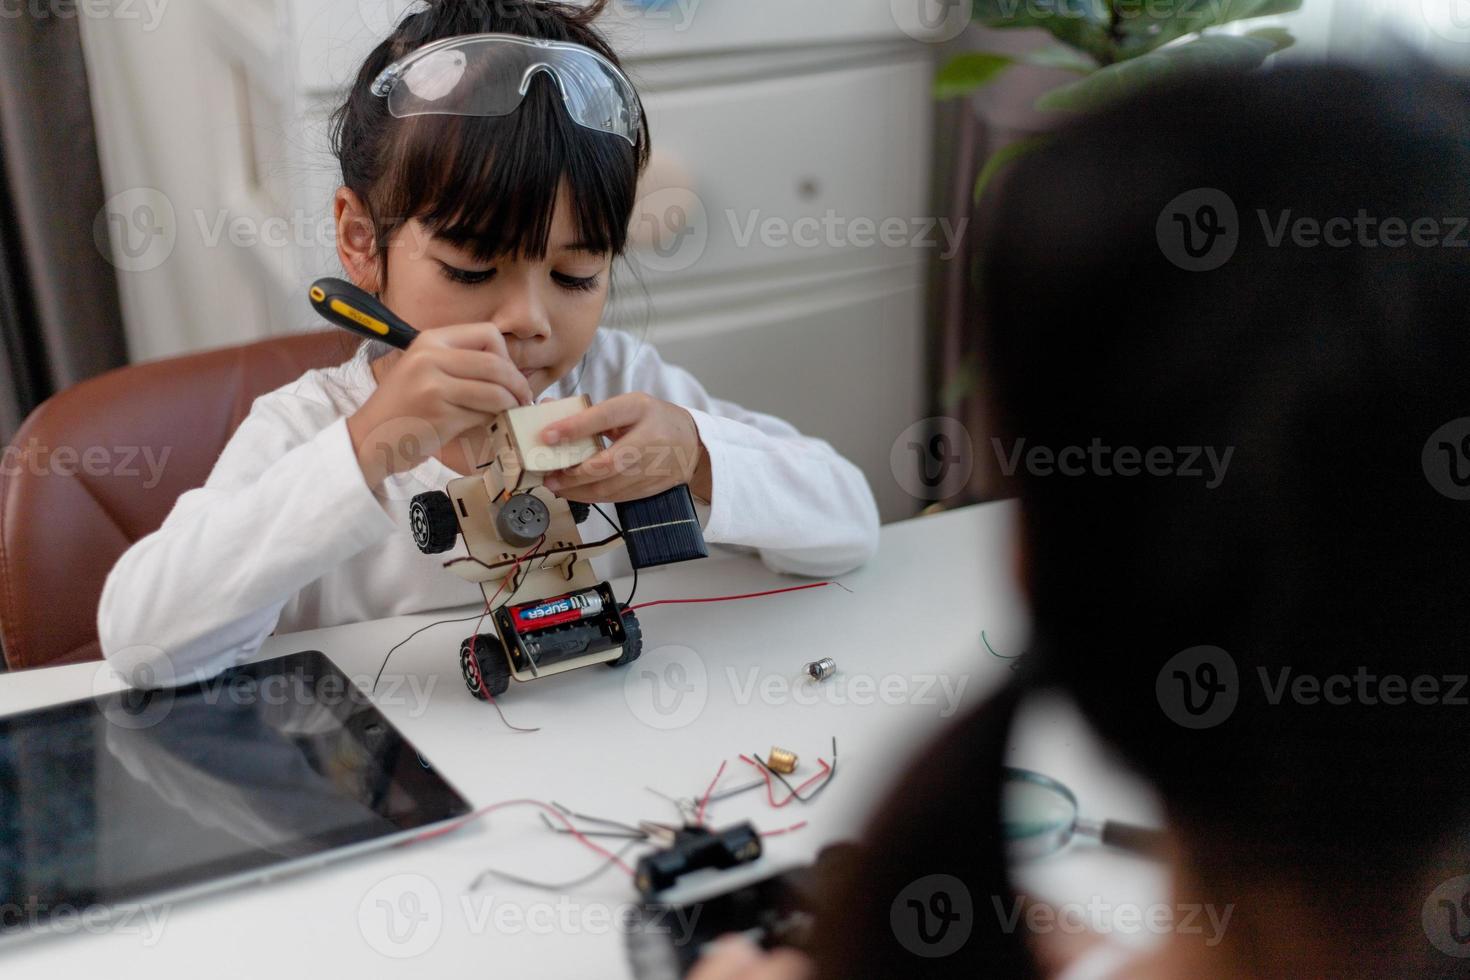 Asien-studenter lär sig hemma i kodning av robotbilar och kablar för elektronikkort i stam, steam, matematik ingenjör vetenskapsteknik datorkod i robotik för barn-koncept. foto